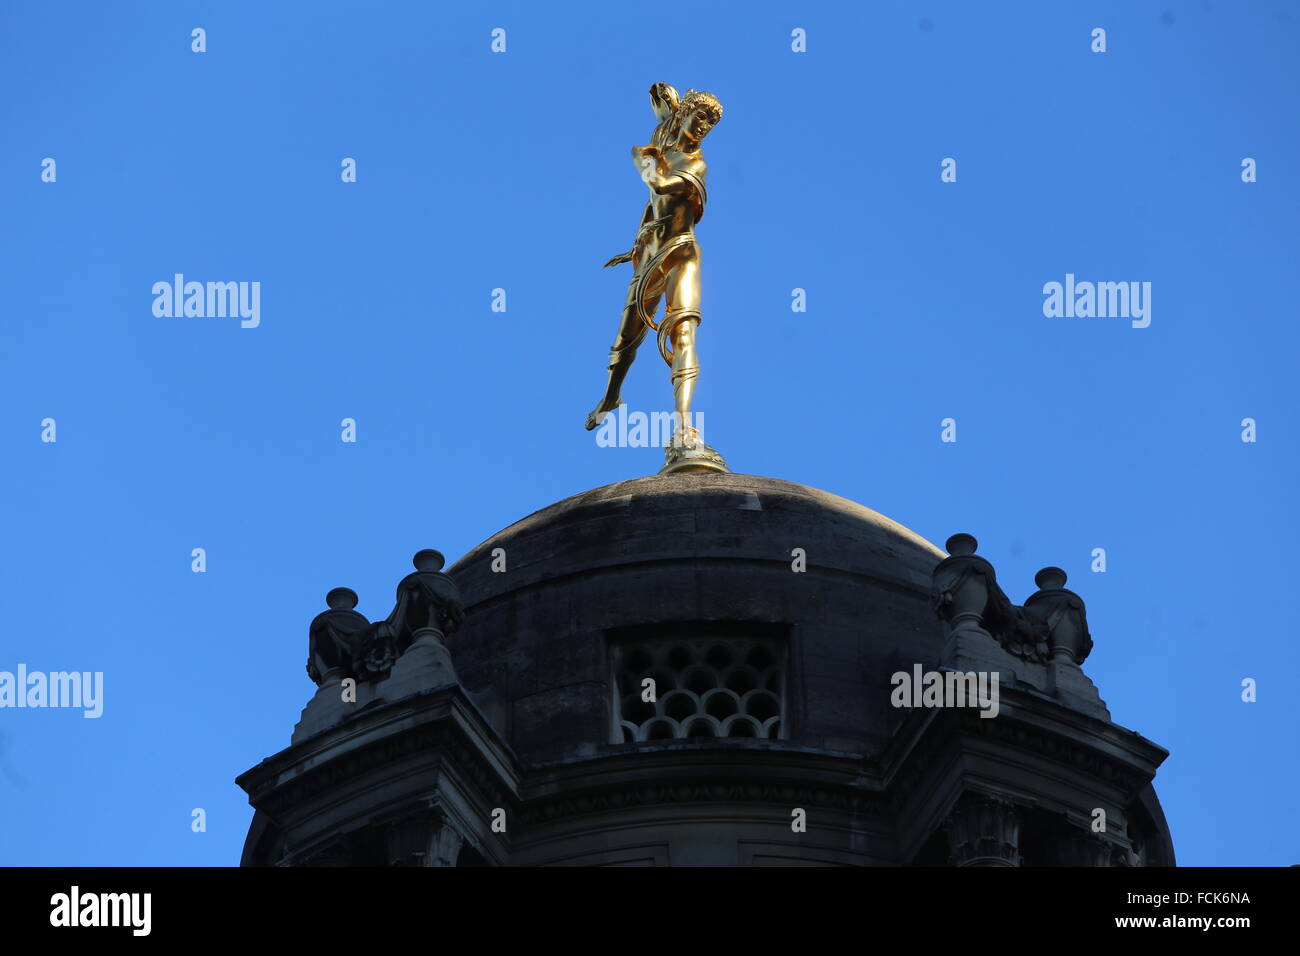 Statue en or de Ariel sur la Banque d'Angleterre, le Prince's Street / Lothbury, EC2, sculpteur Sir Charles Wheeler Pretty Boy Banque D'Images